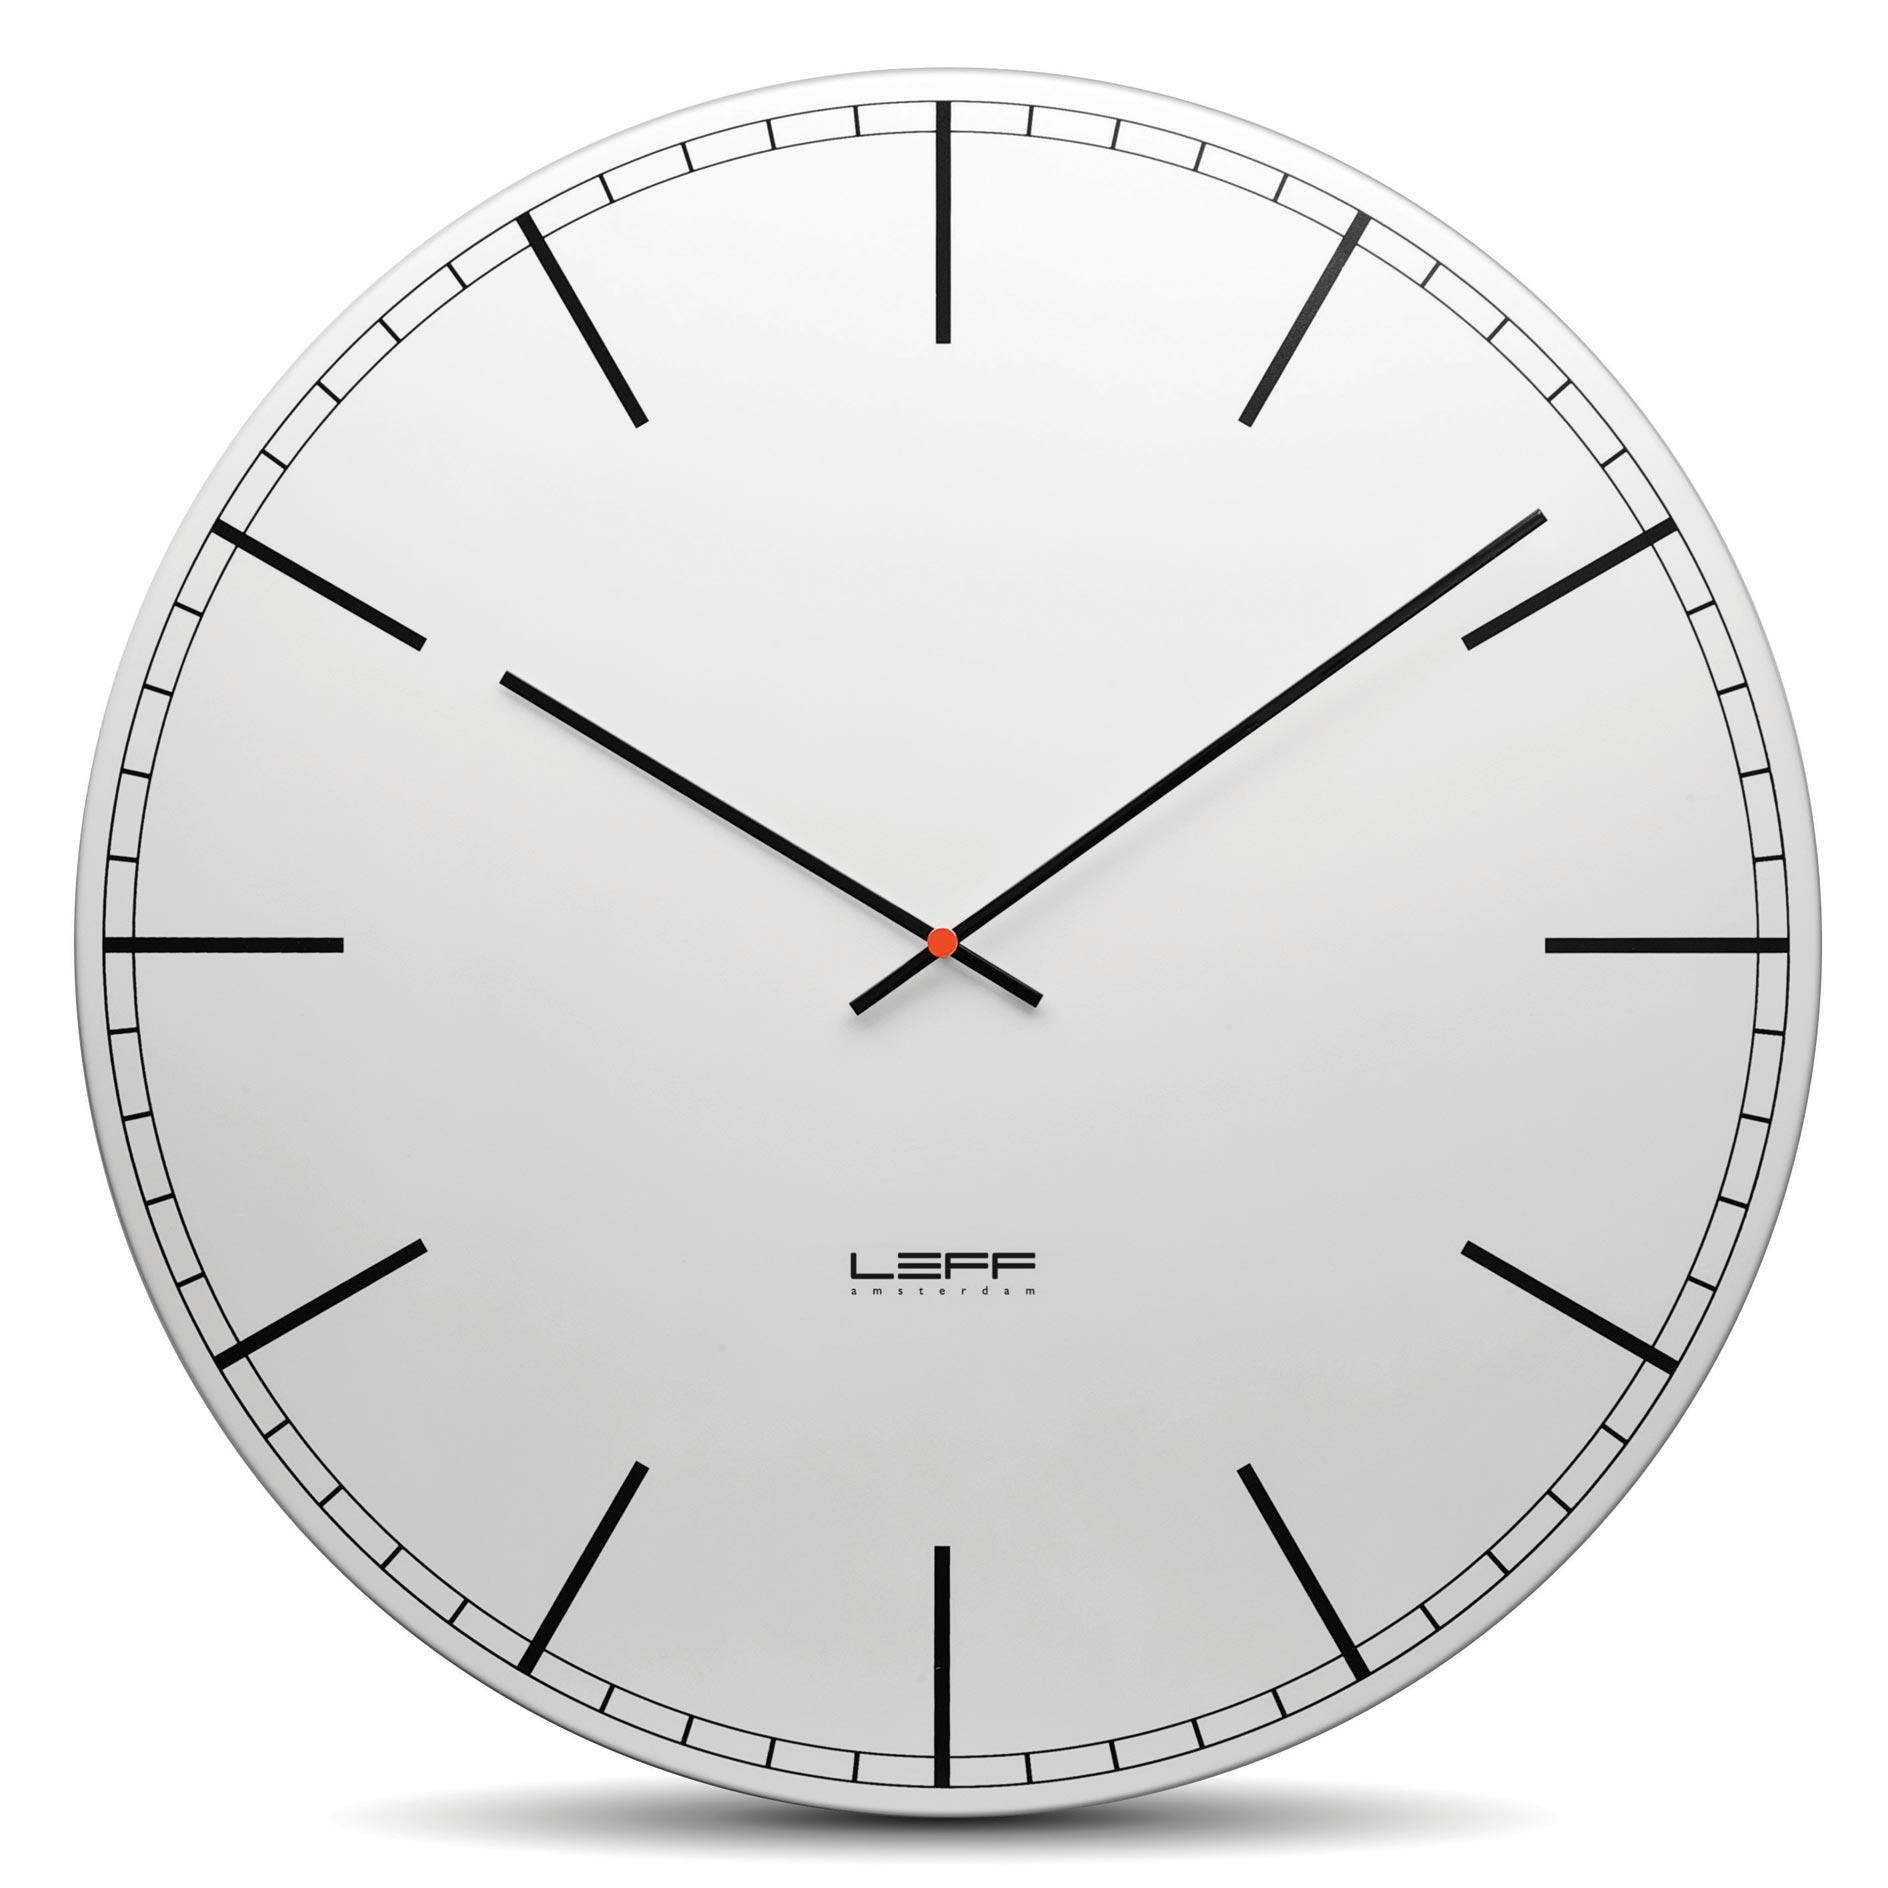 Варианты циферблата. Часы Leff Amsterdam настенные. Настенные часы Leff lt11006. Часы круглые. Часы без циферблата настенные.